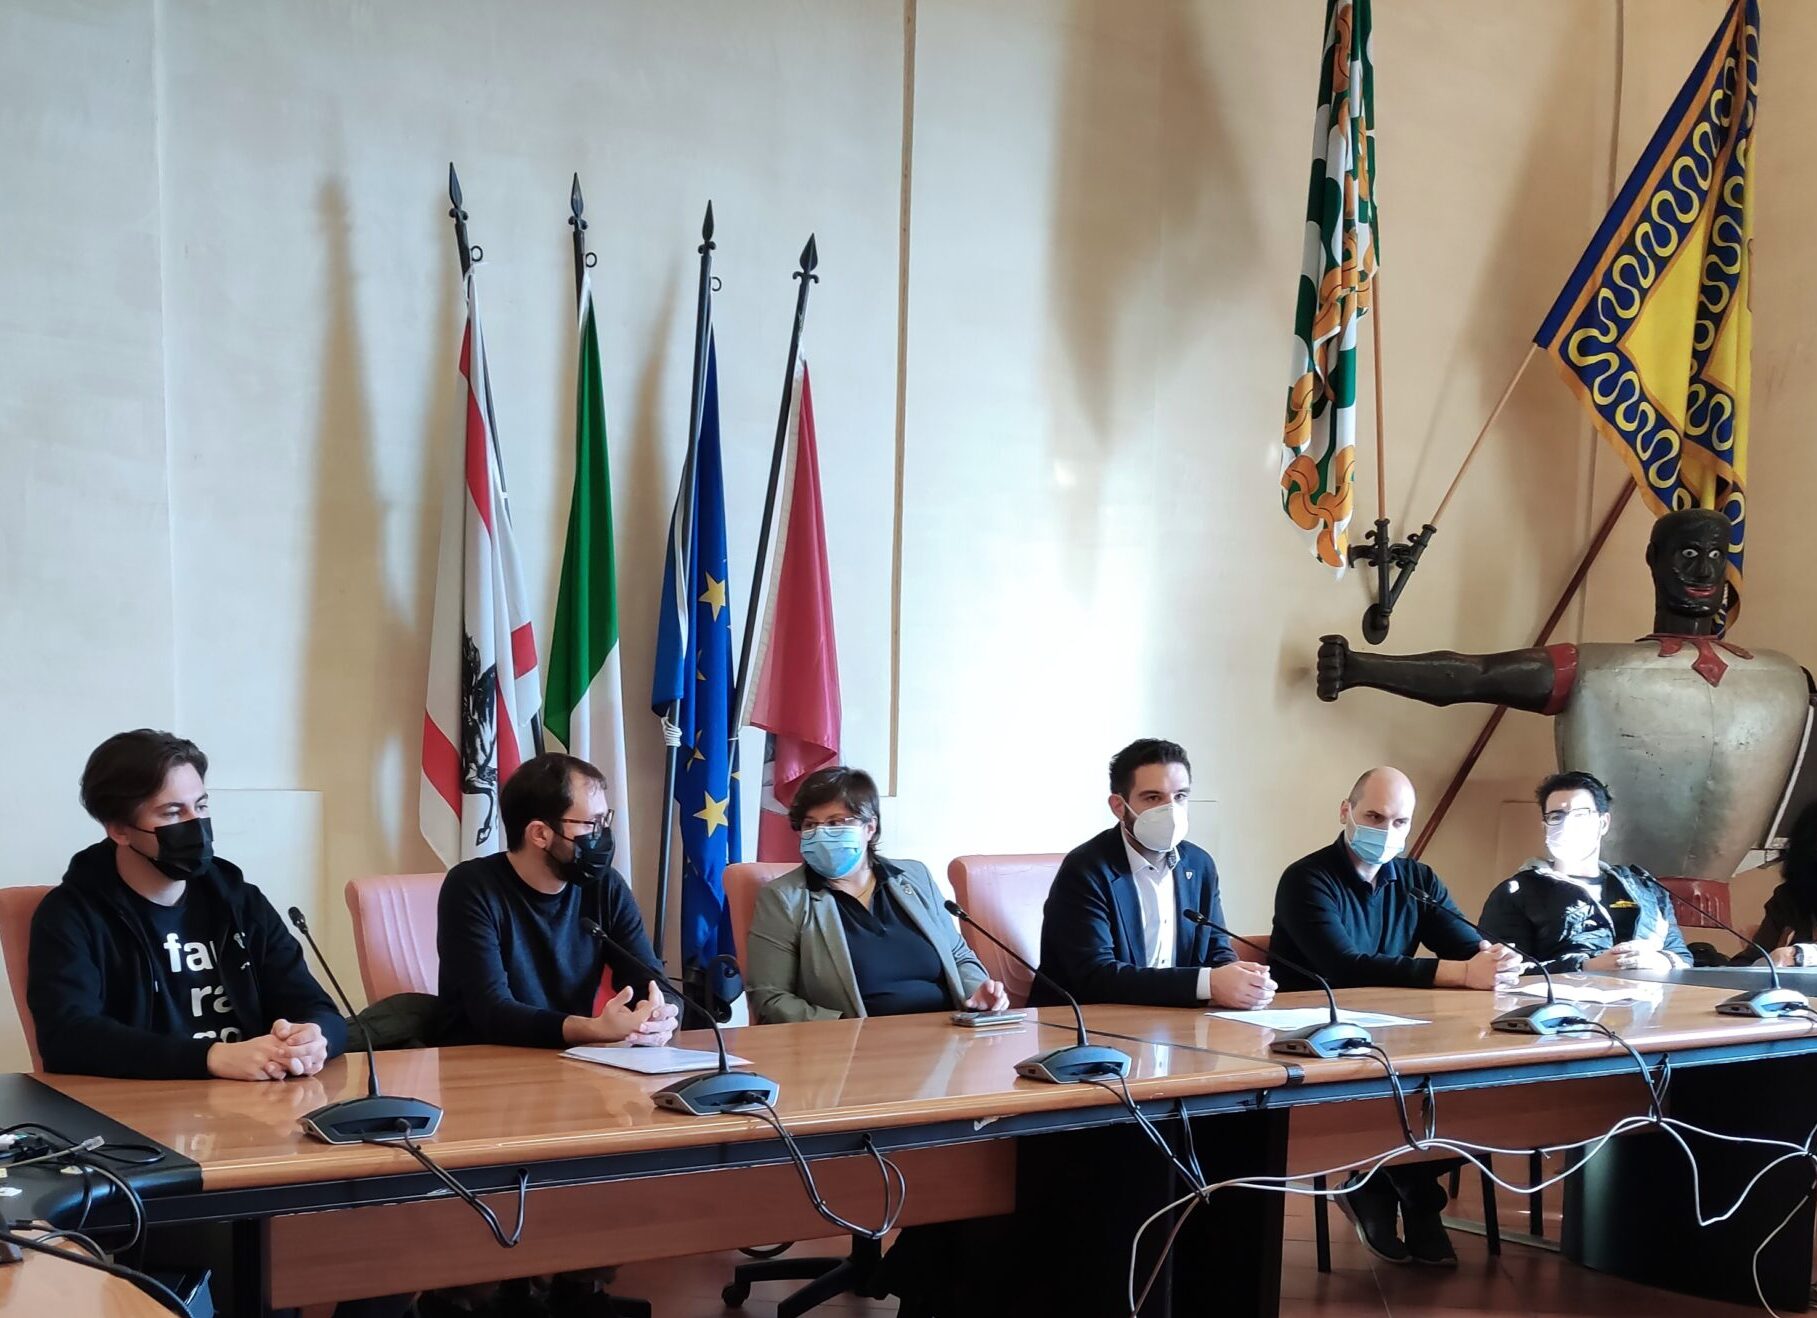 Comune di Arezzo: le politiche giovanili e le politiche sociali insieme